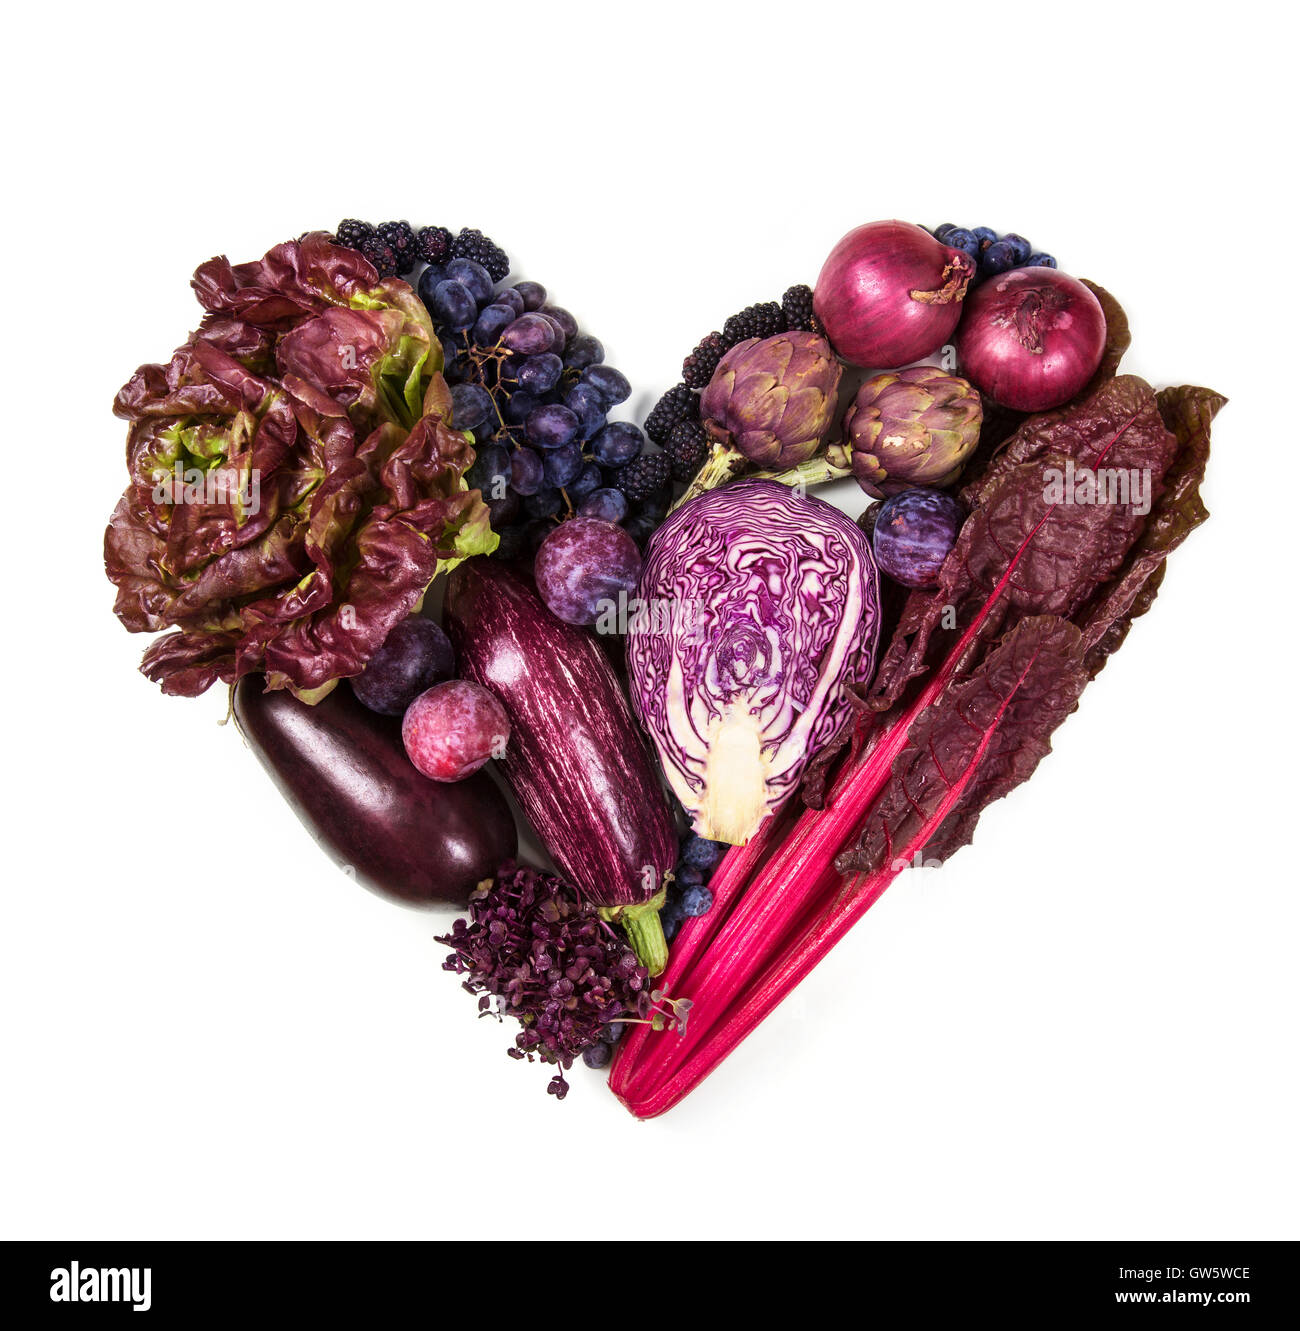 Coeur de bleu et violet des fruits et légumes frais isolé sur fond blanc Banque D'Images